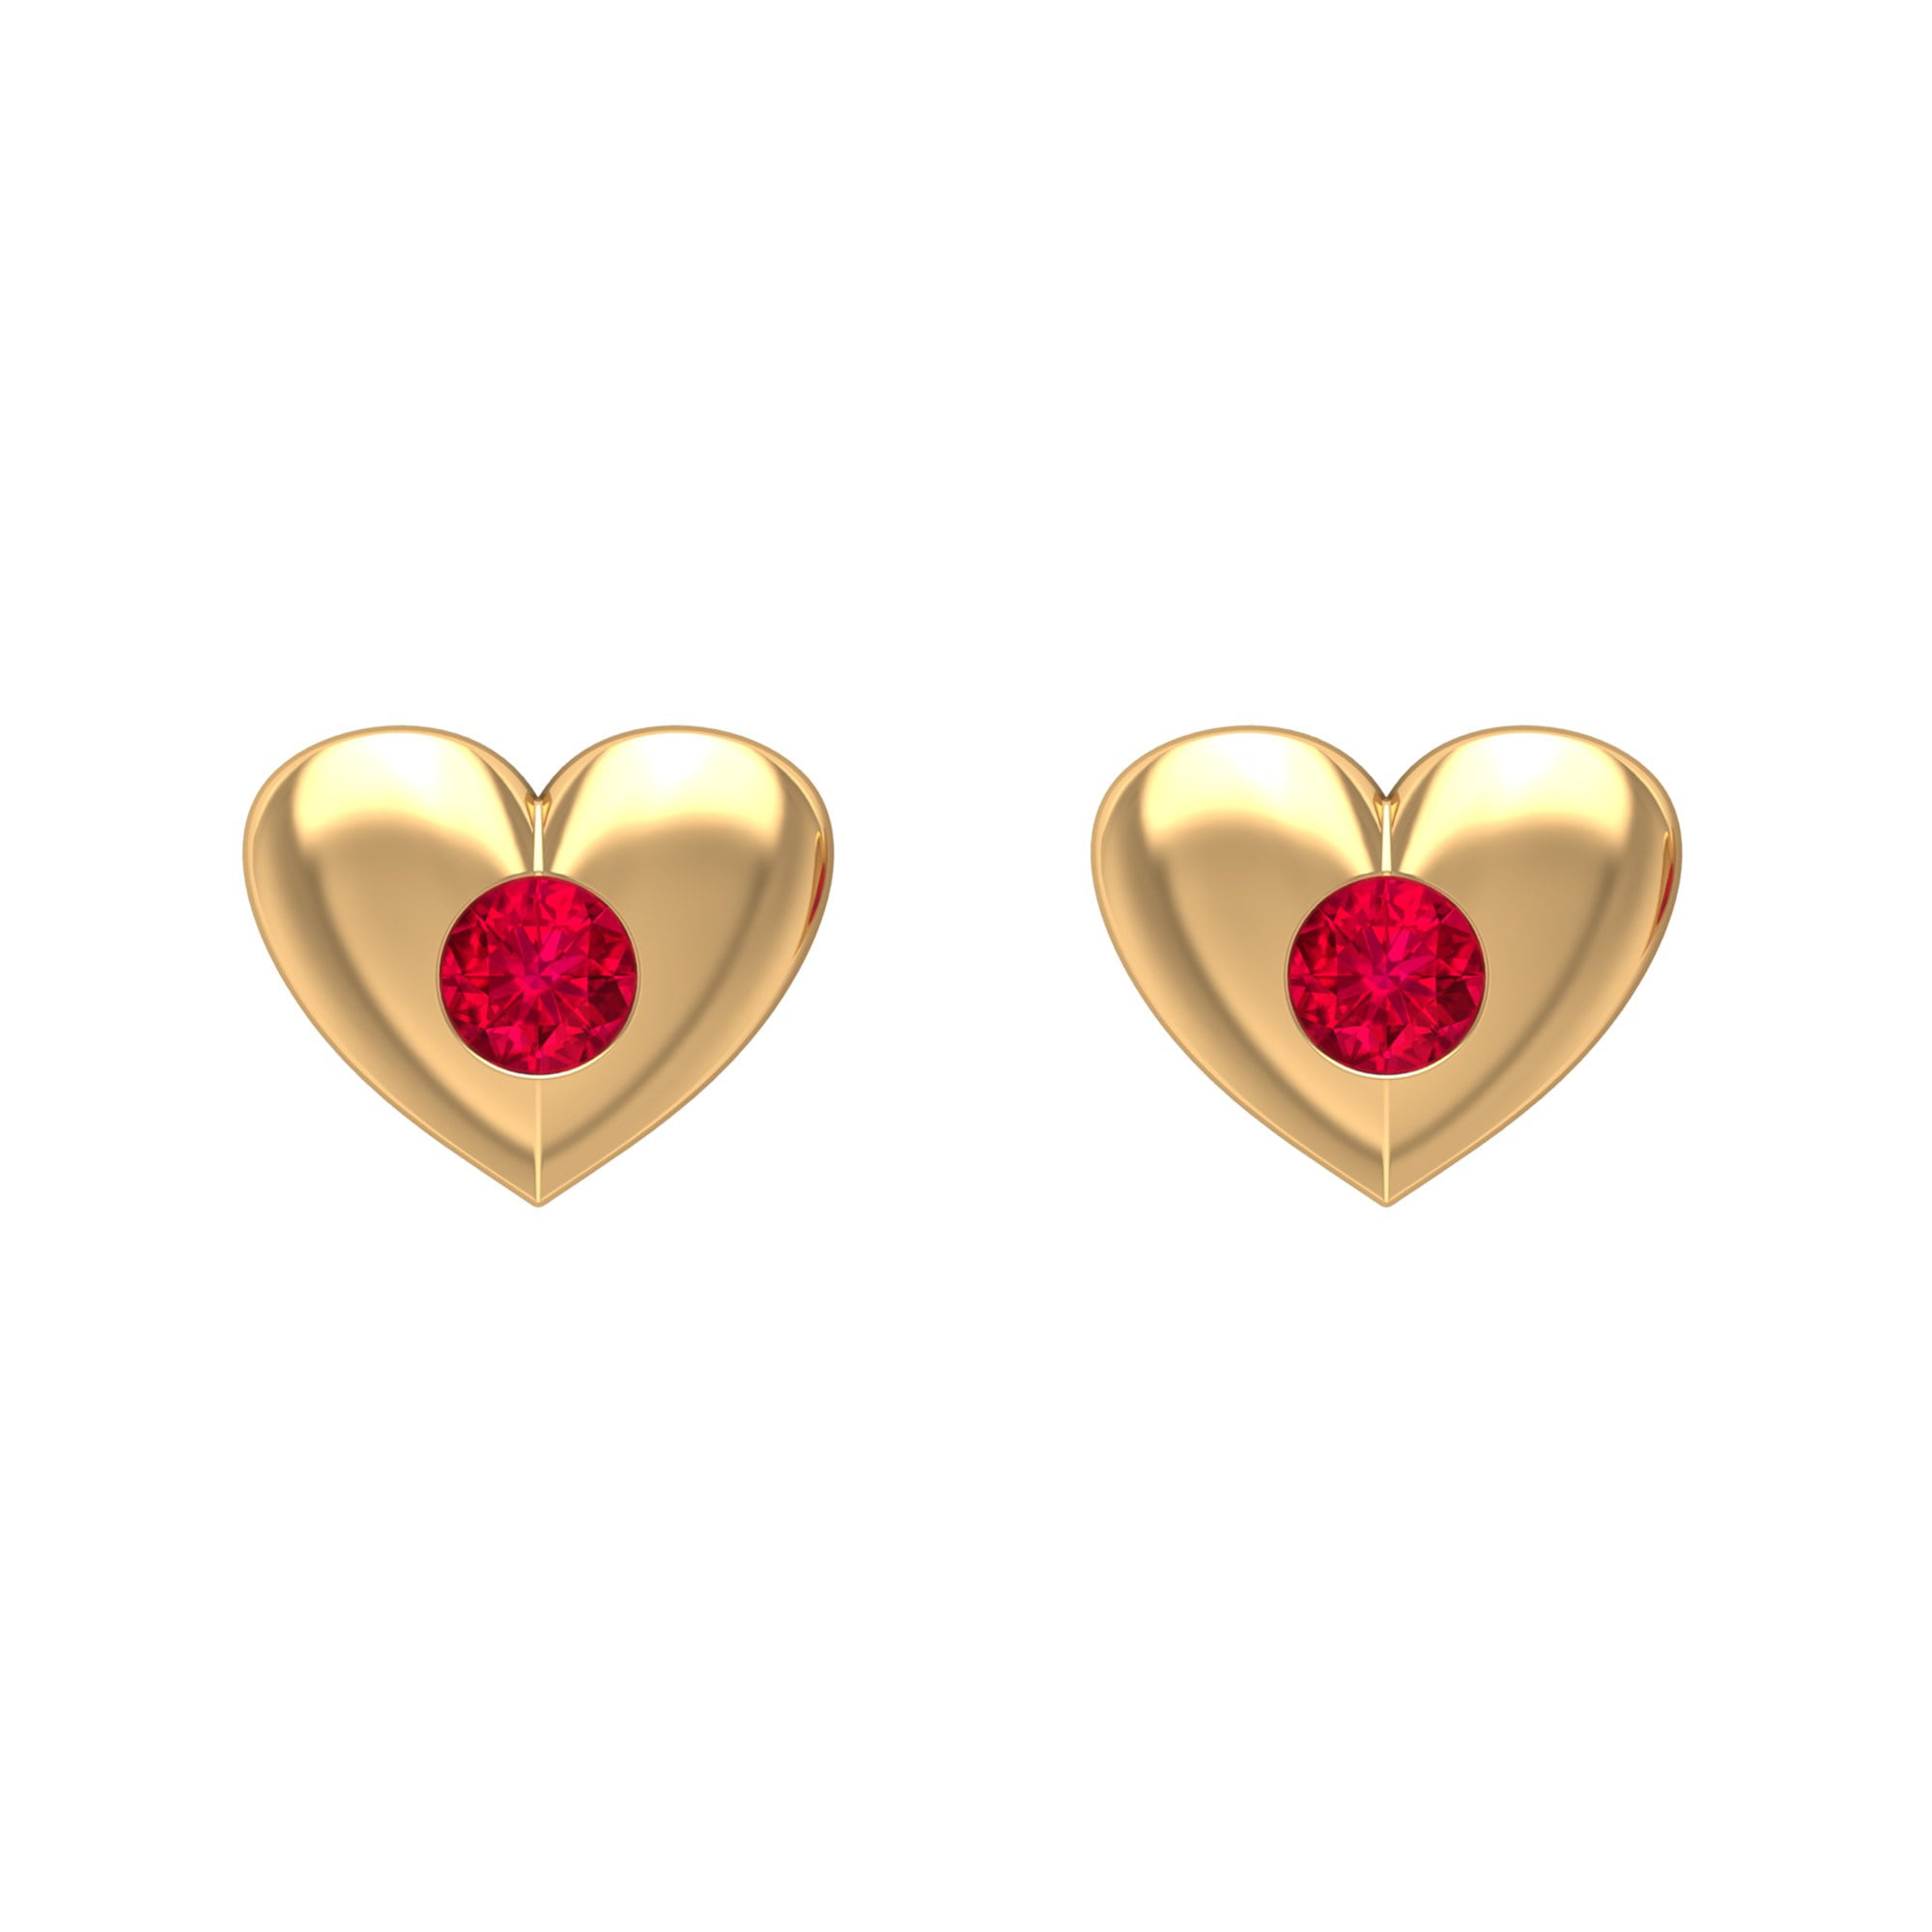 Heart Shaped Yellow Gold Stud Earrings